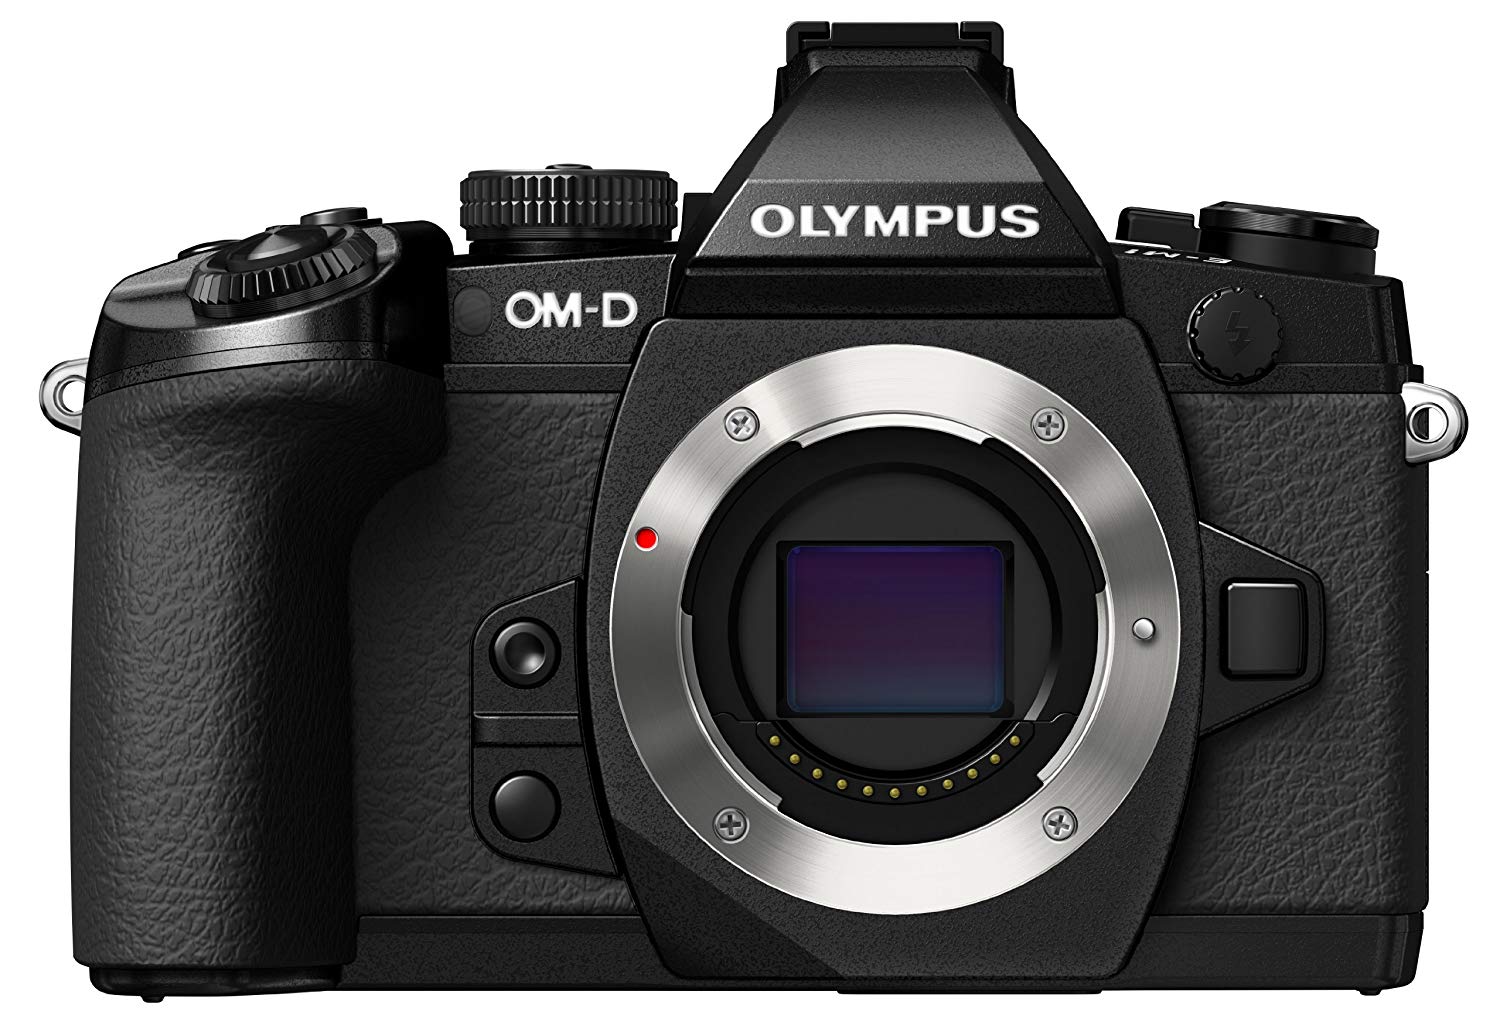 Olympus Беззеркальная цифровая камера OM-D E-M1 с 16-мегапиксельным и 3-дюймовым ЖК-дисплеем (только корпус) (черный)